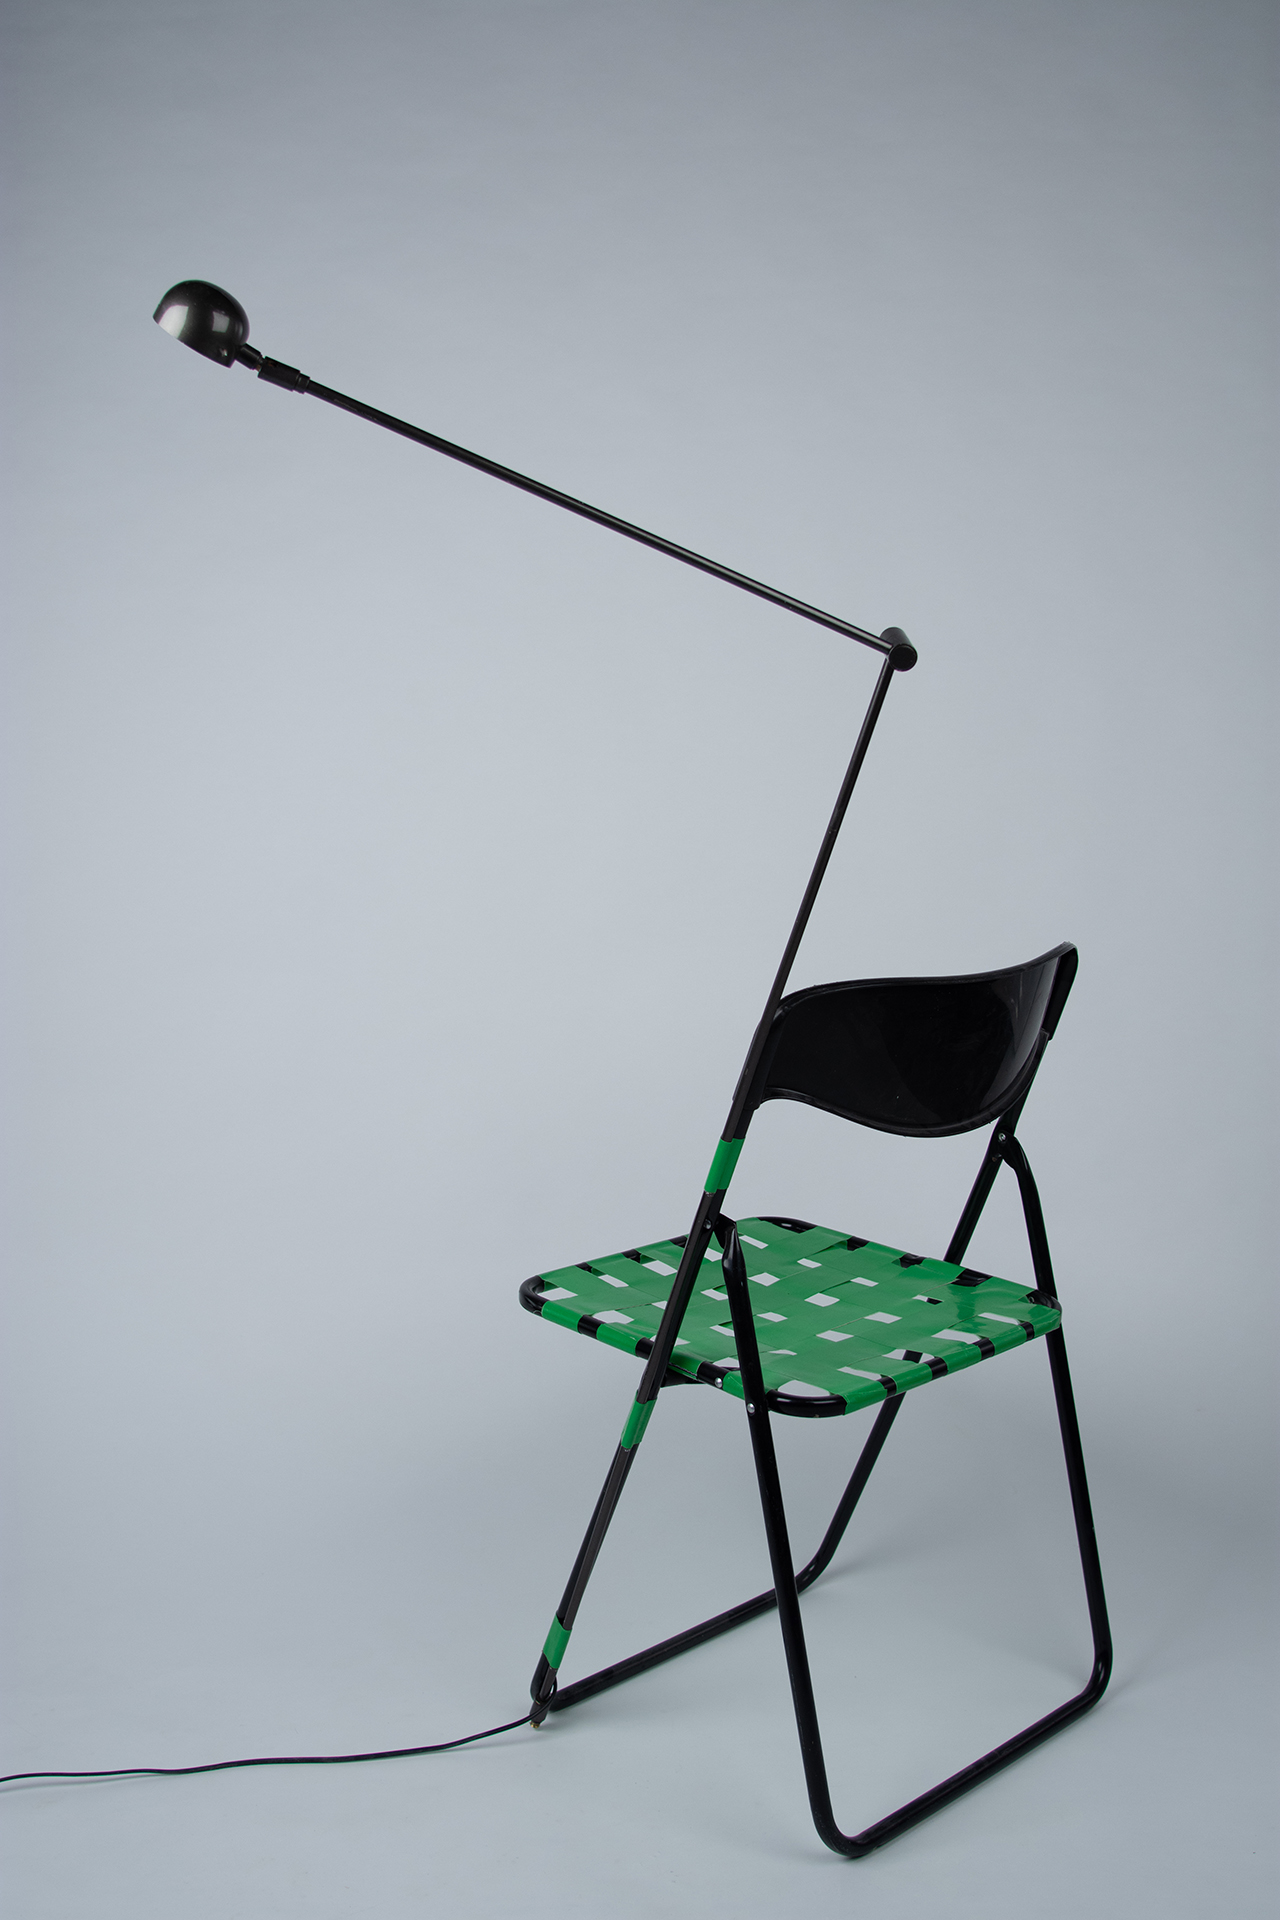 lamp chair